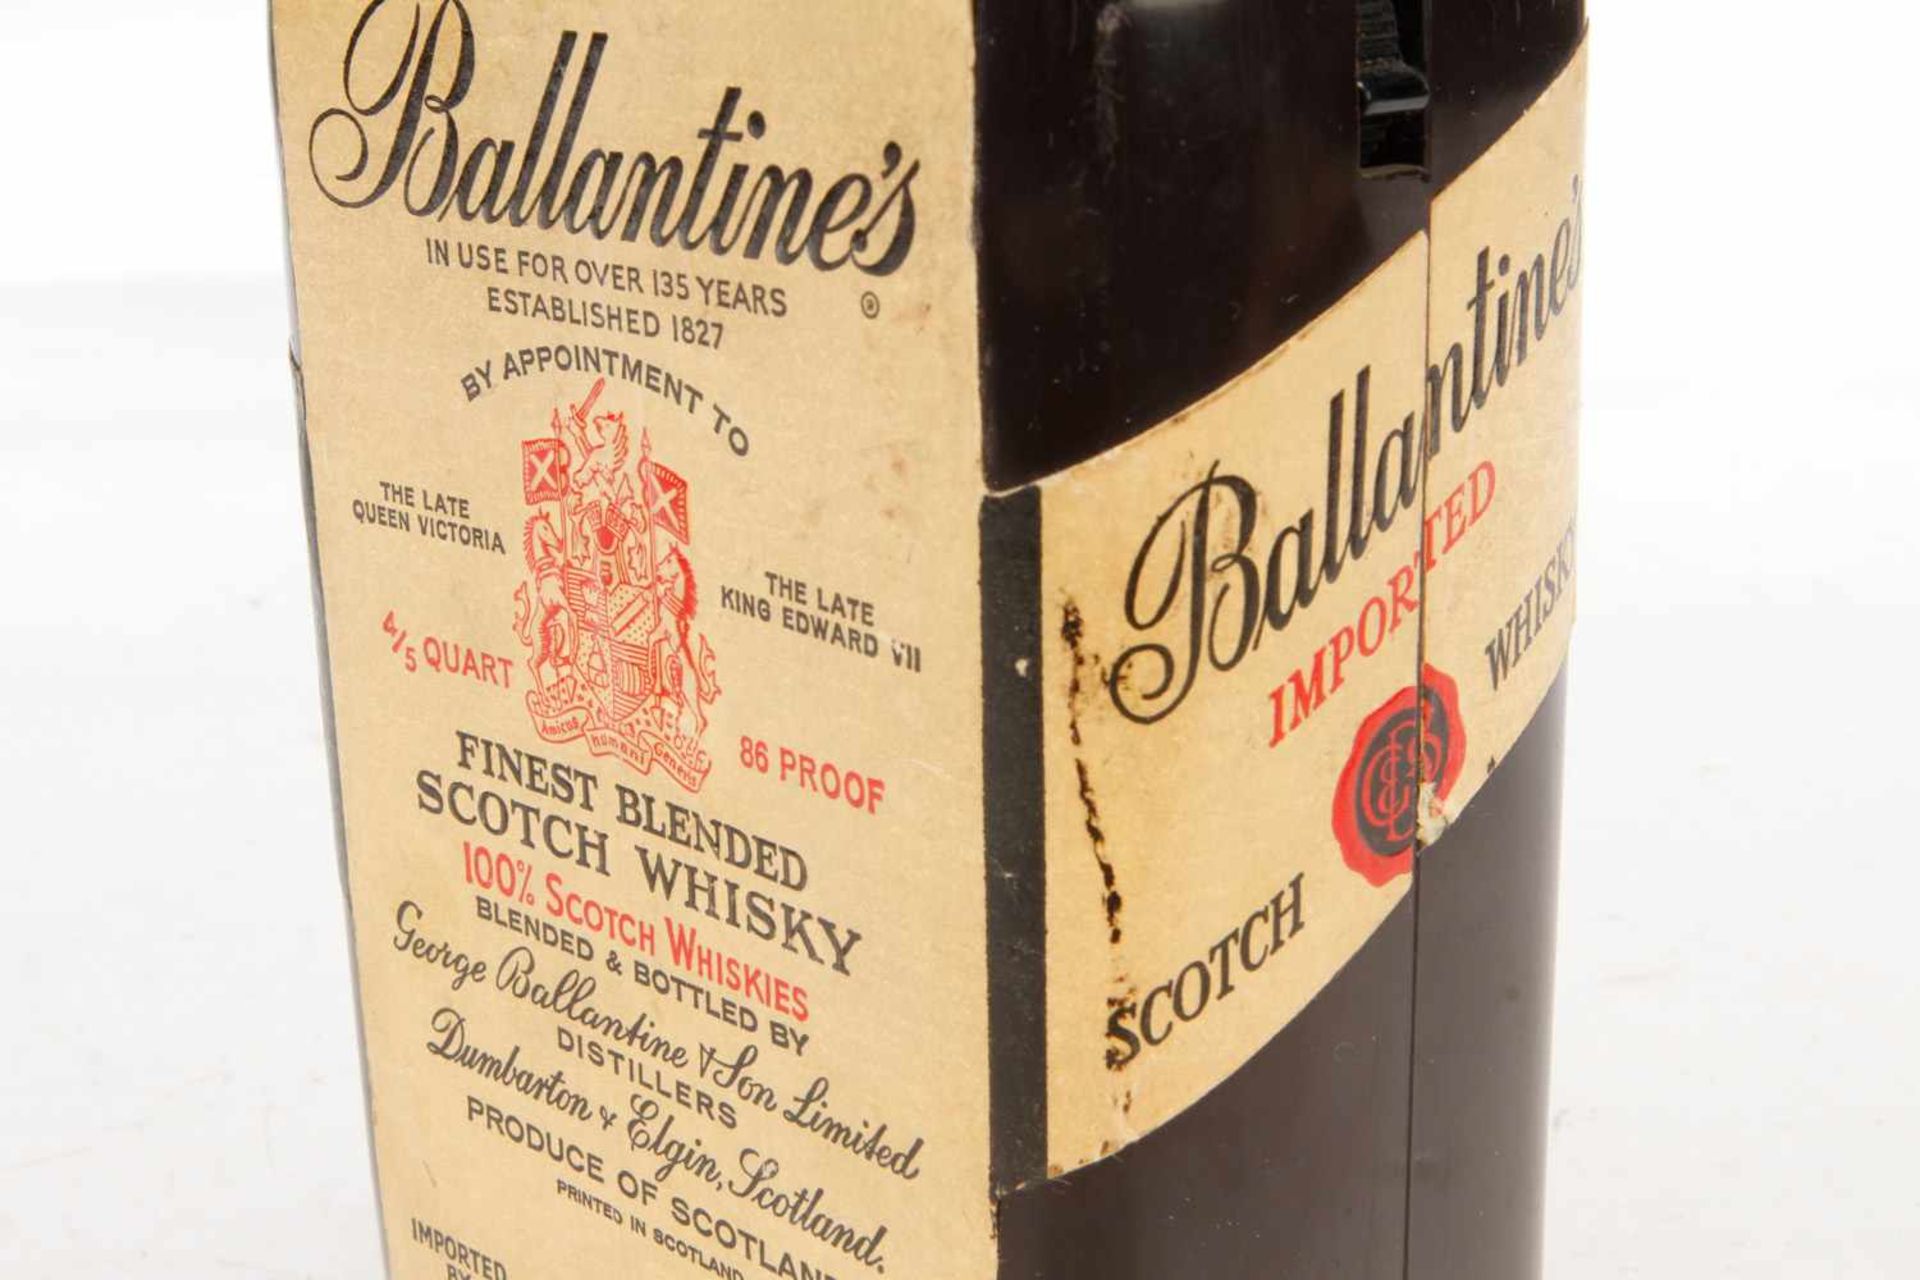 Werbe-Radio in Form einer Ballantines Whisky-Flasche, Höhe 23 cm- - -22.50 % buyer's premium on - Bild 2 aus 5